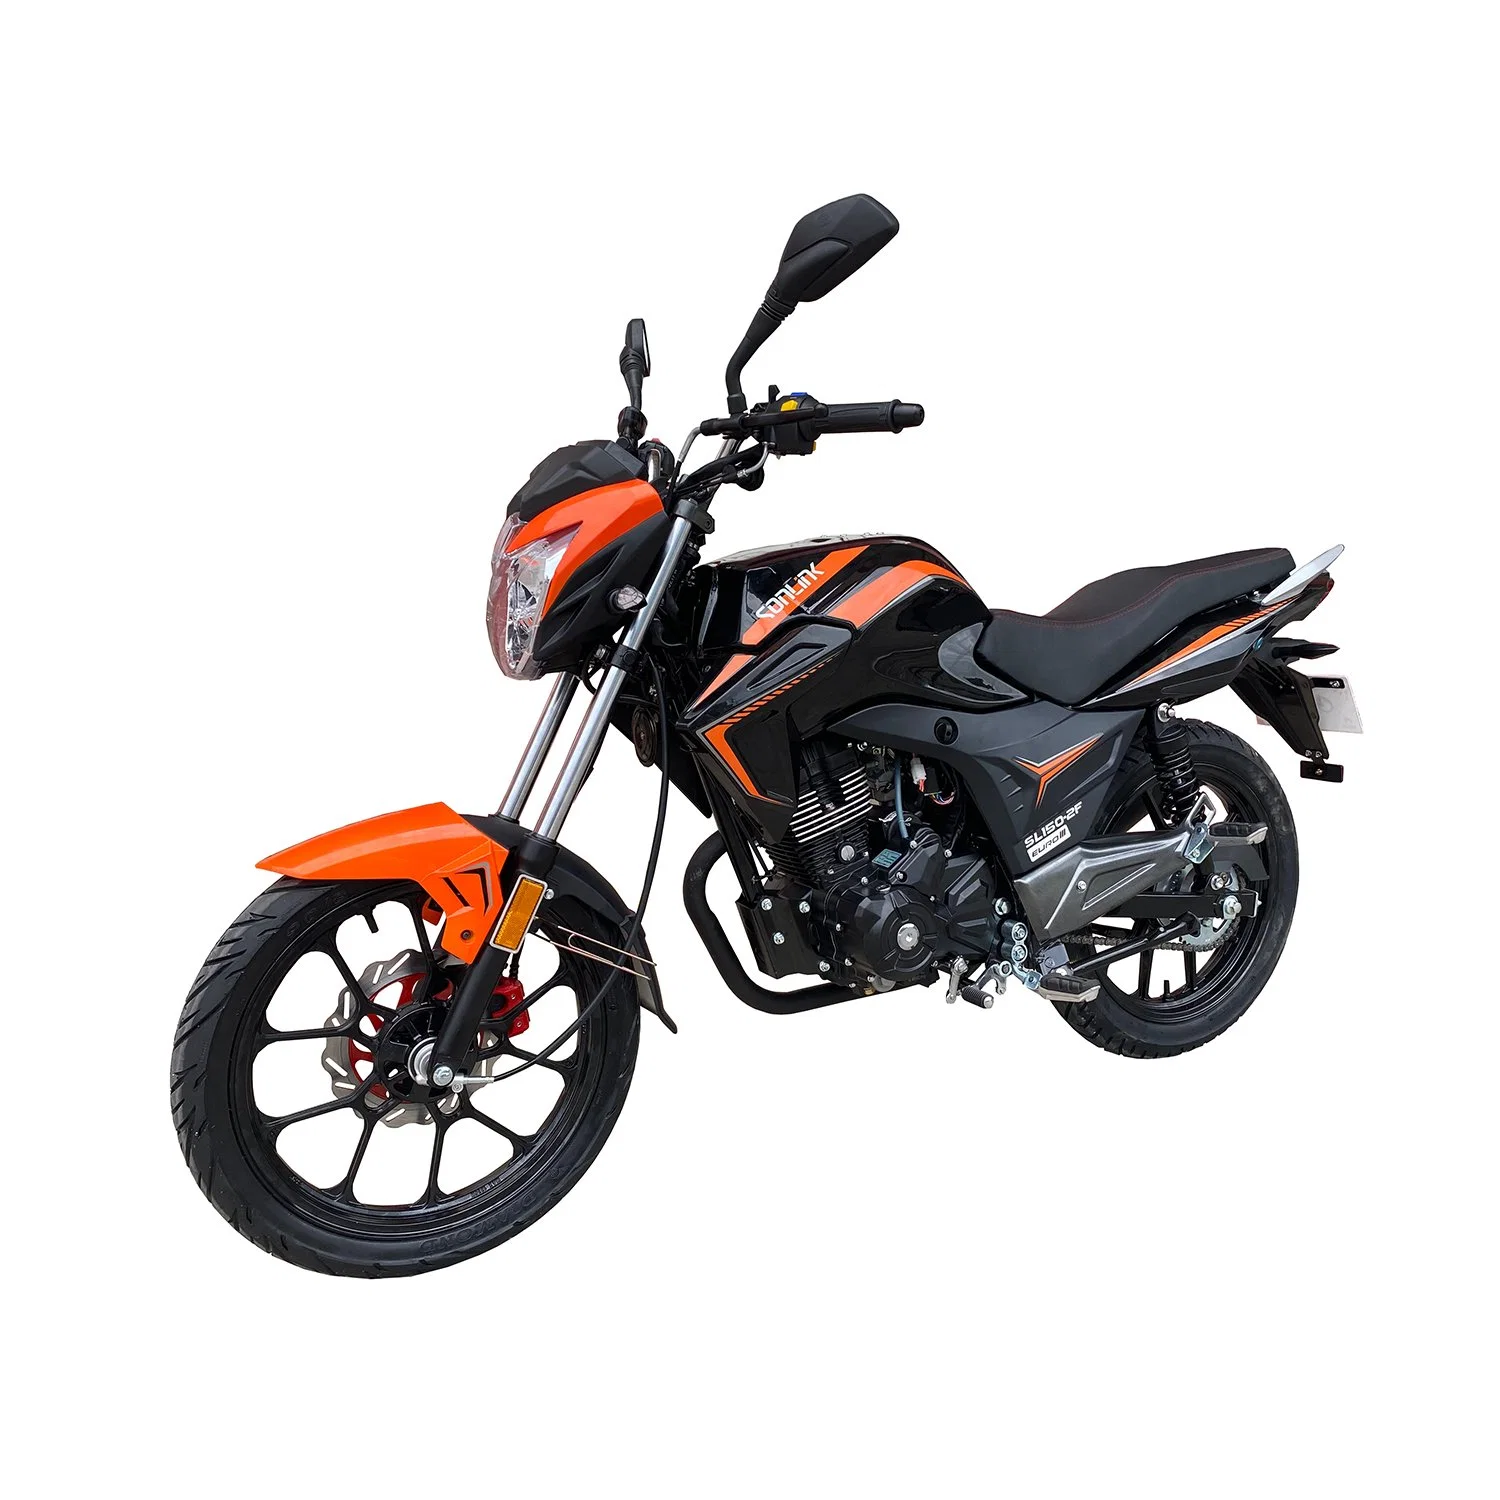 Sport Motociclo / 150cc Moto / 150cc Scooter / 125 Cc Scooter / 100cc motociclo / 125 Cc Dirt Bike